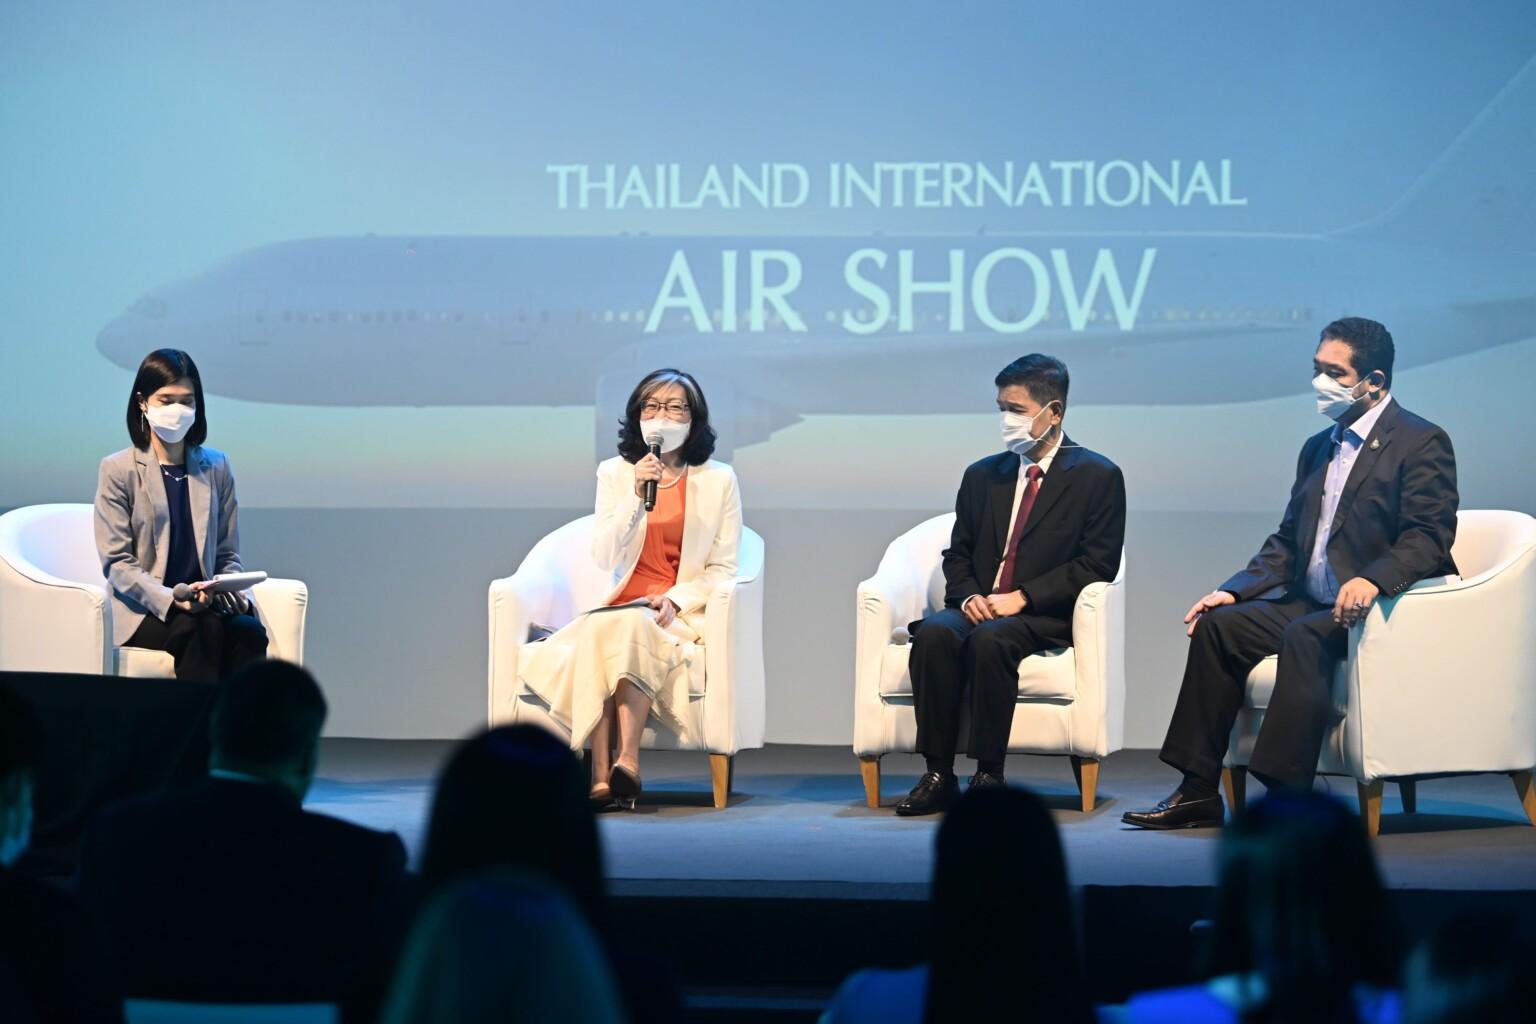 สสปน. ดึงงาน 'Air Show' มาจัดเป็นครั้งแรกในประเทศไทย เพื่อยกระดับสนามบินอู่ตะเภา สู่ศูนย์กลางการบินของภูมิภาคอาเซียน